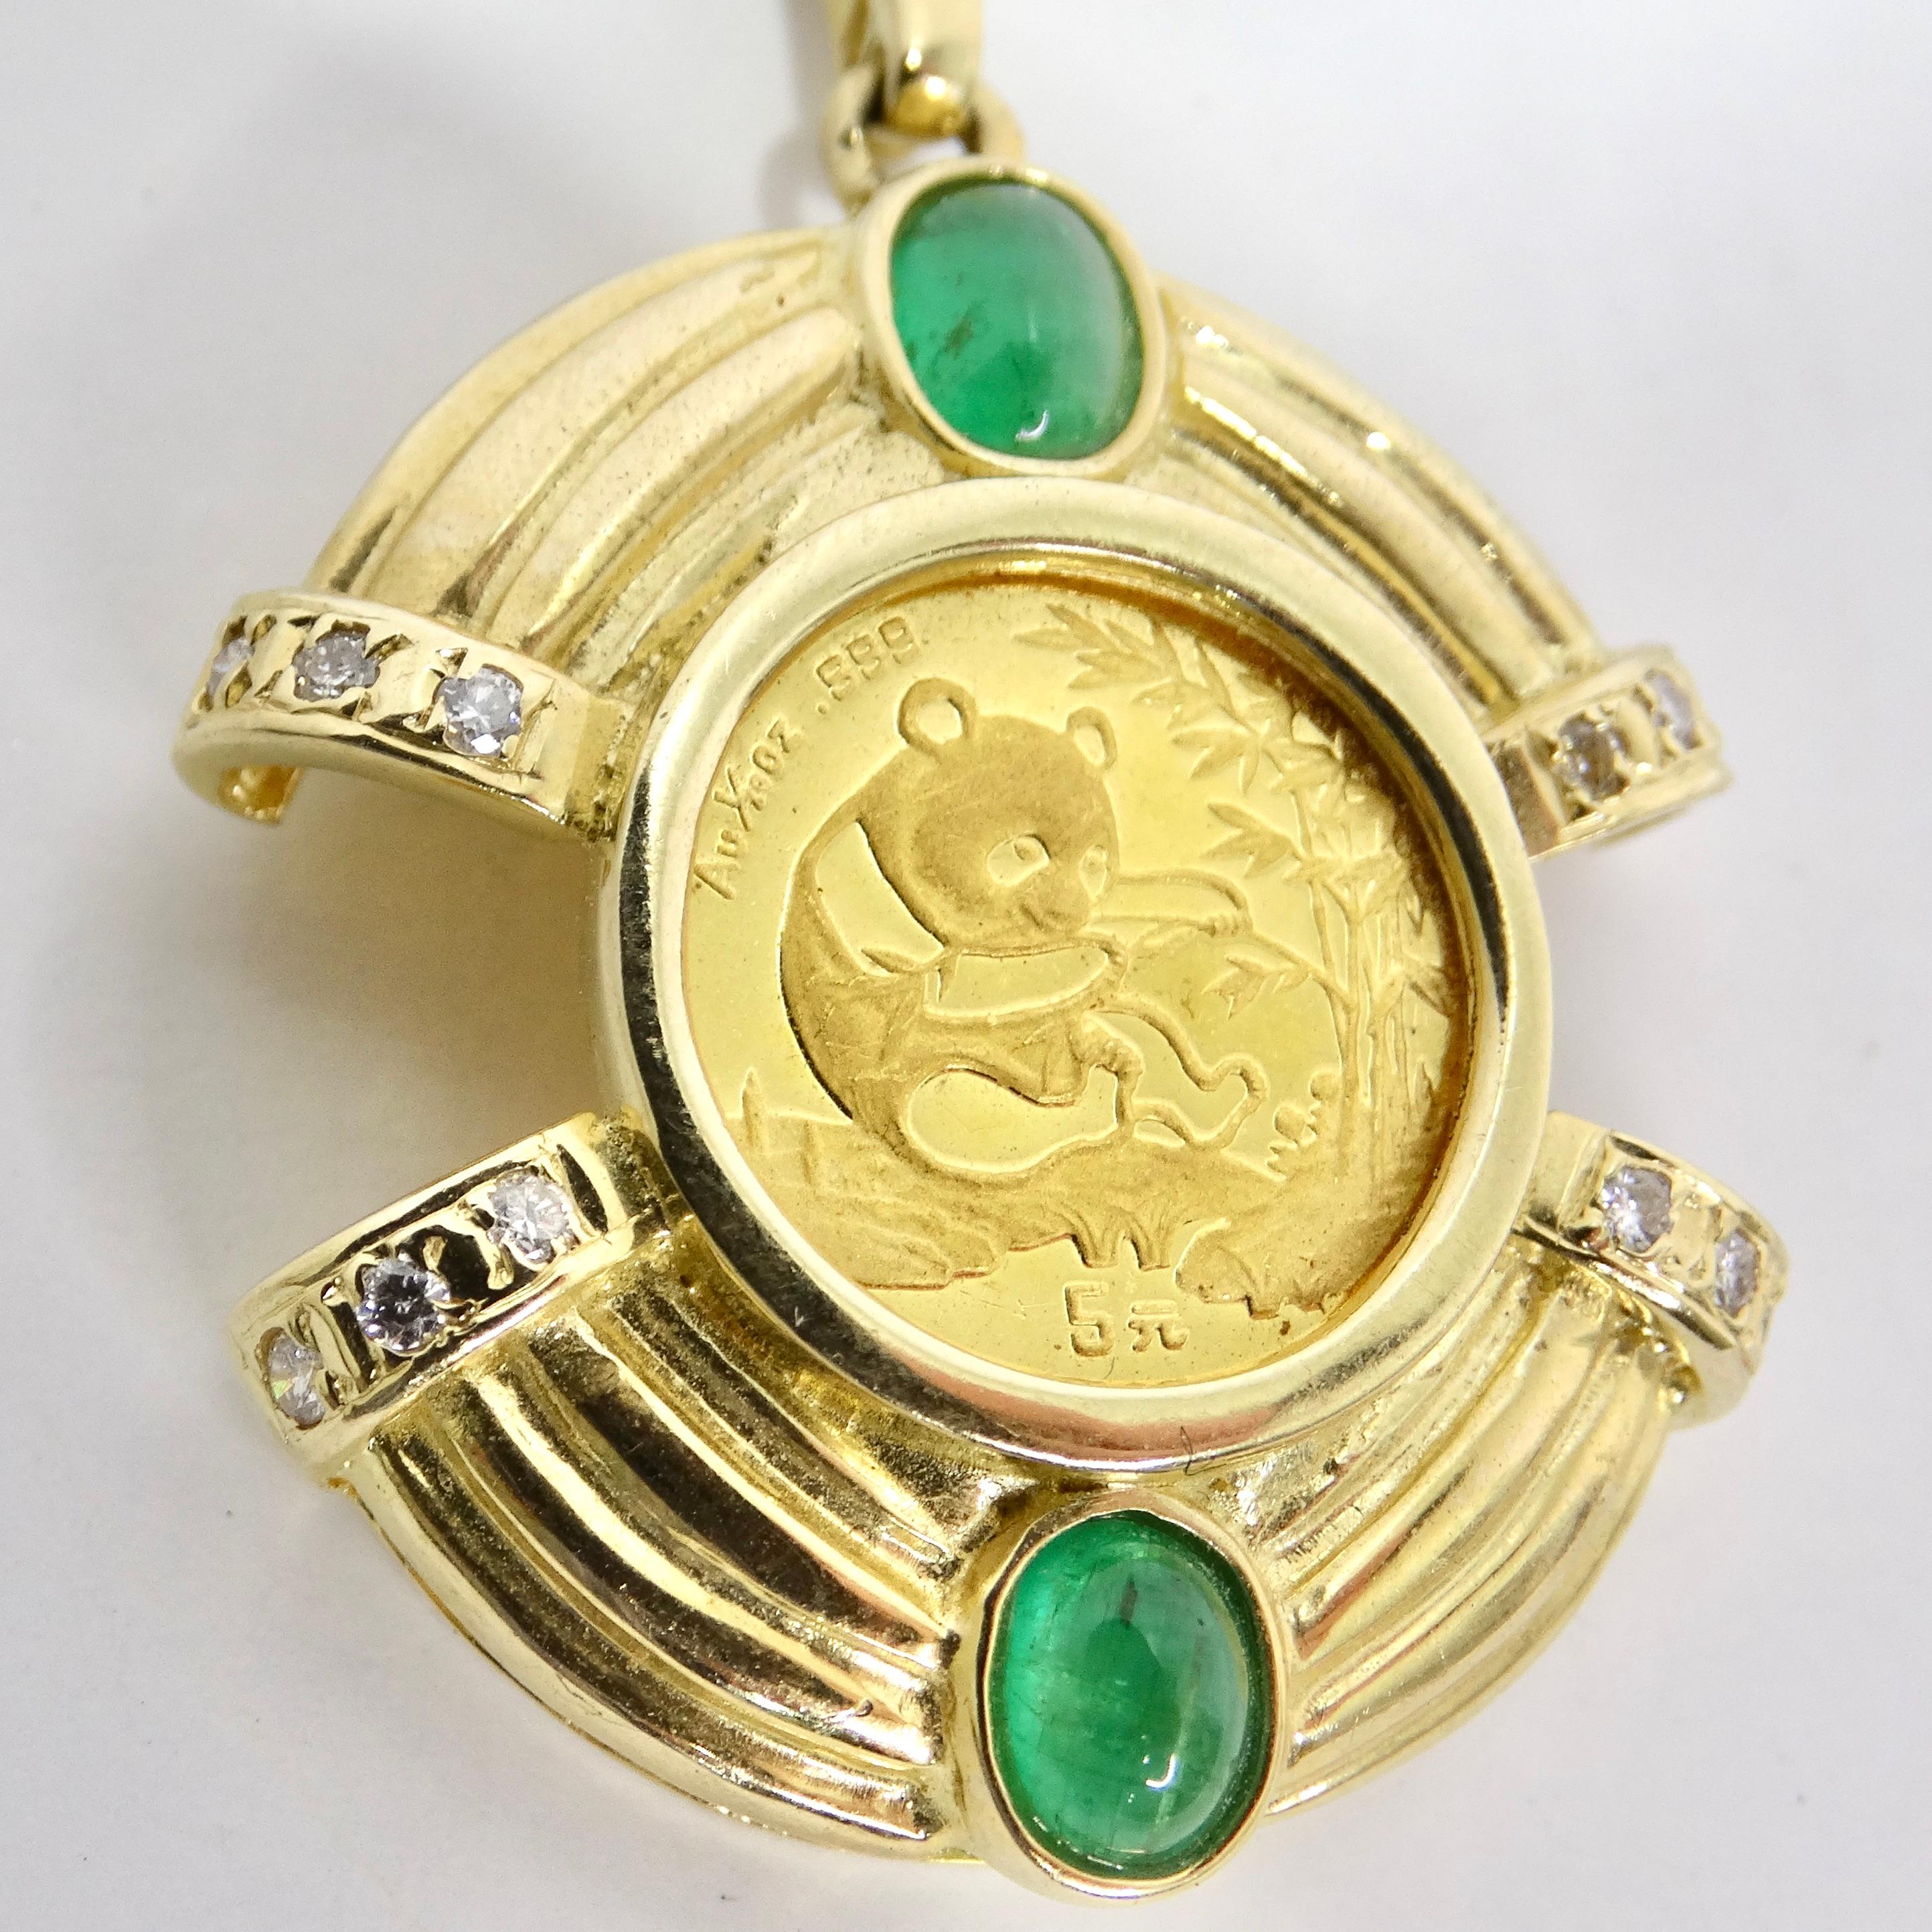 Ne manquez pas le pendentif Vintage 24K Cabachon Emerald & Diamonds- Un luxueux mélange de métaux précieux et de pierres précieuses ! La pièce maîtresse de ce pendentif est une pièce en or pur 24 carats ornée d'un charmant motif de panda entouré